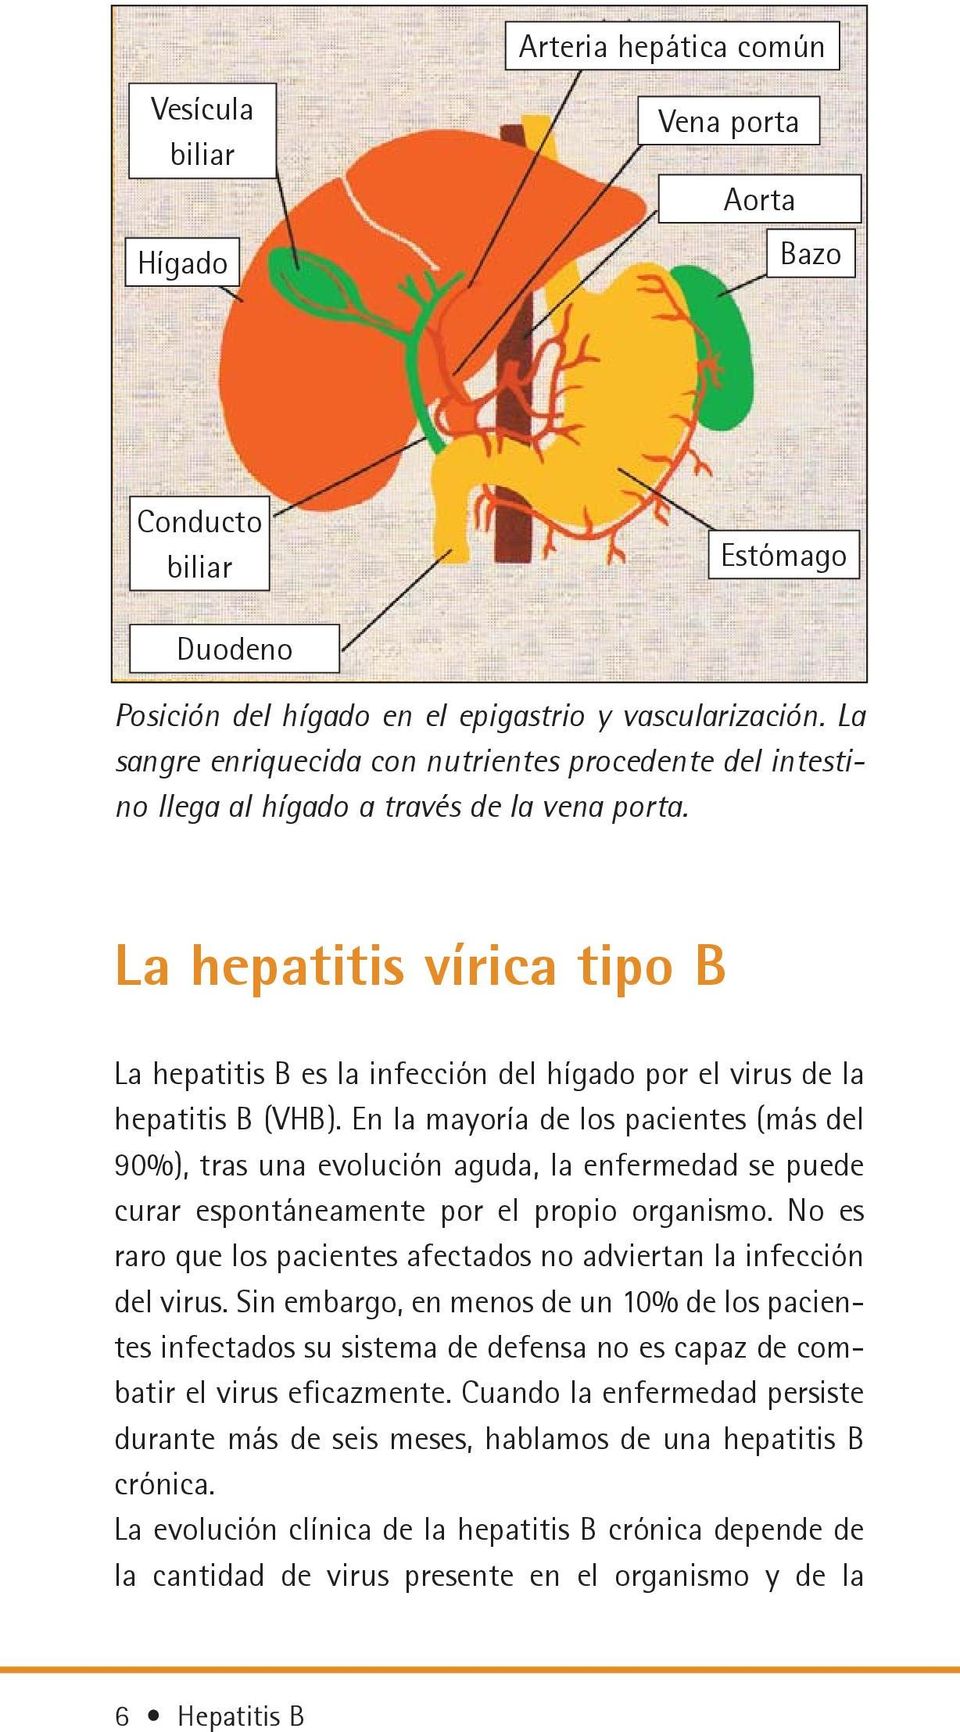 La hepatitis vírica tipo B La hepatitis B es la infección del hígado por el virus de la hepatitis B (VHB).